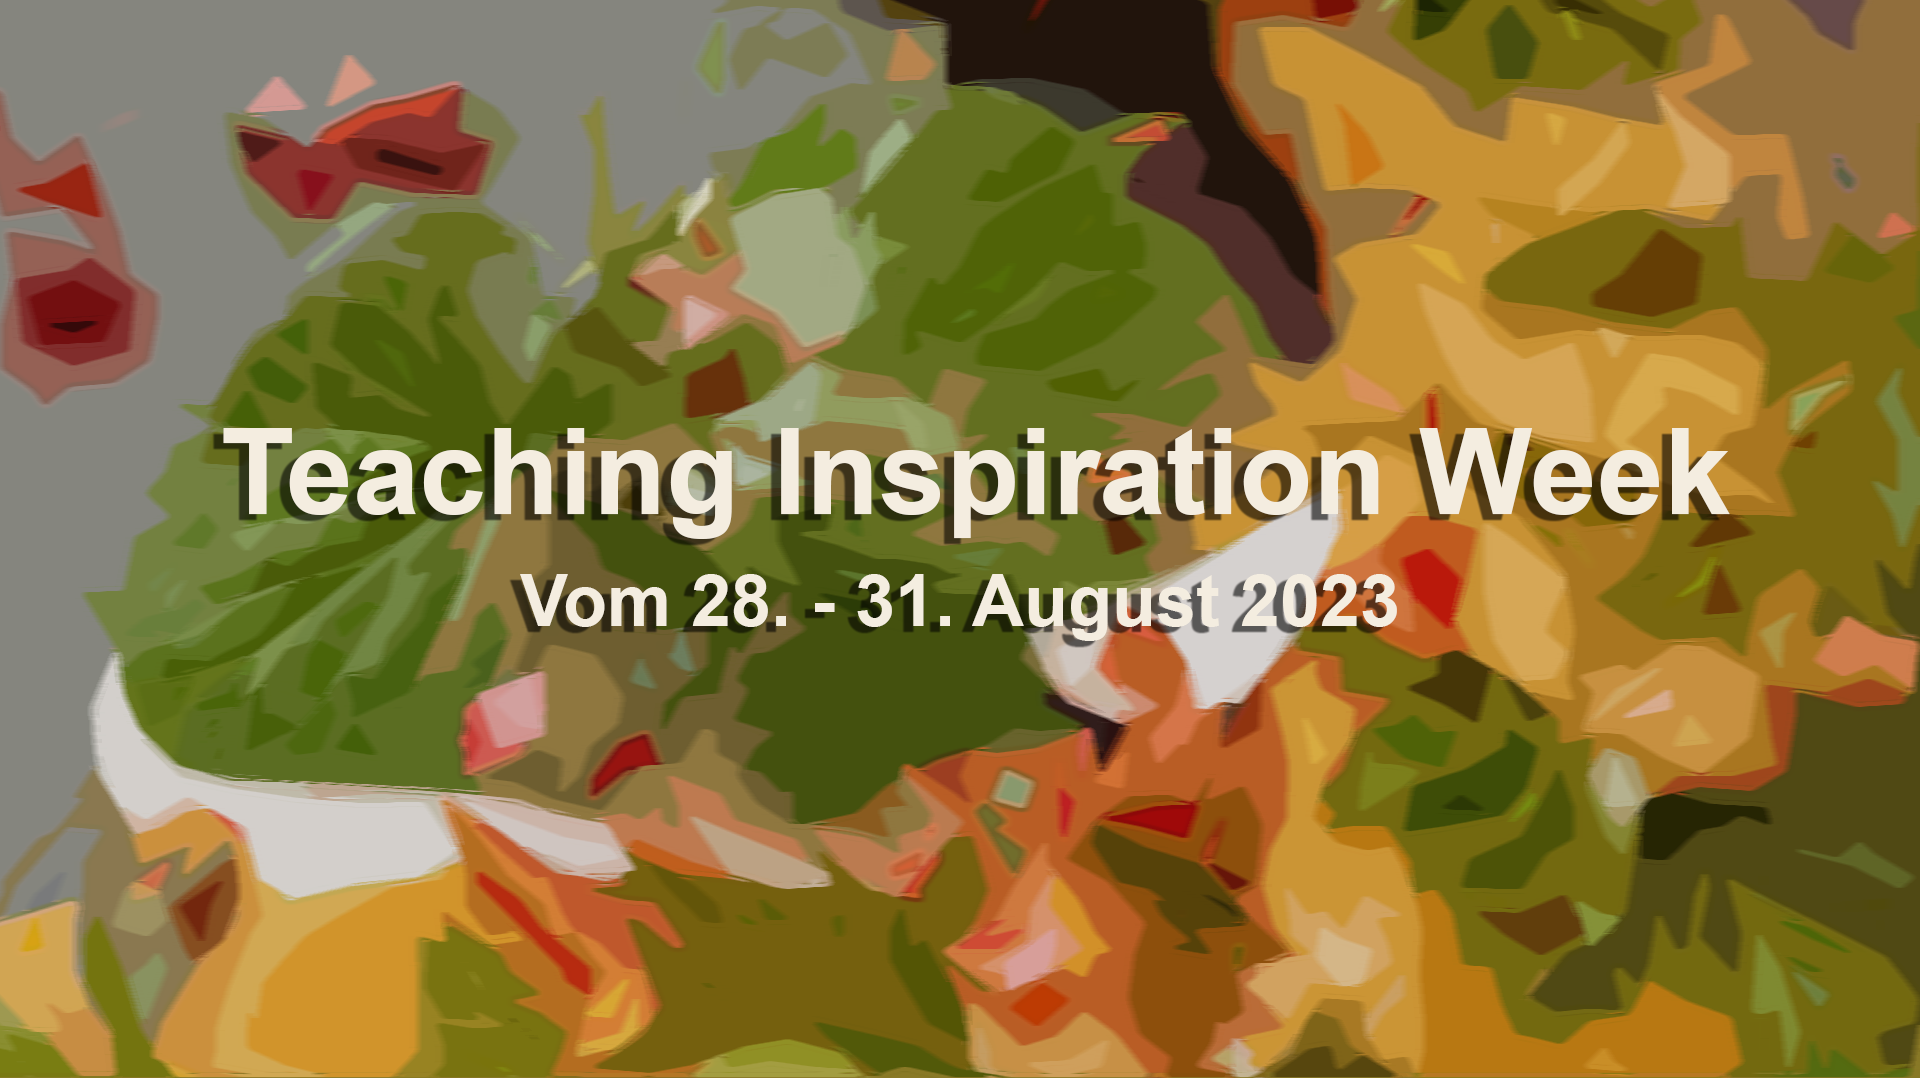 Teaching Inspiration Week 2023